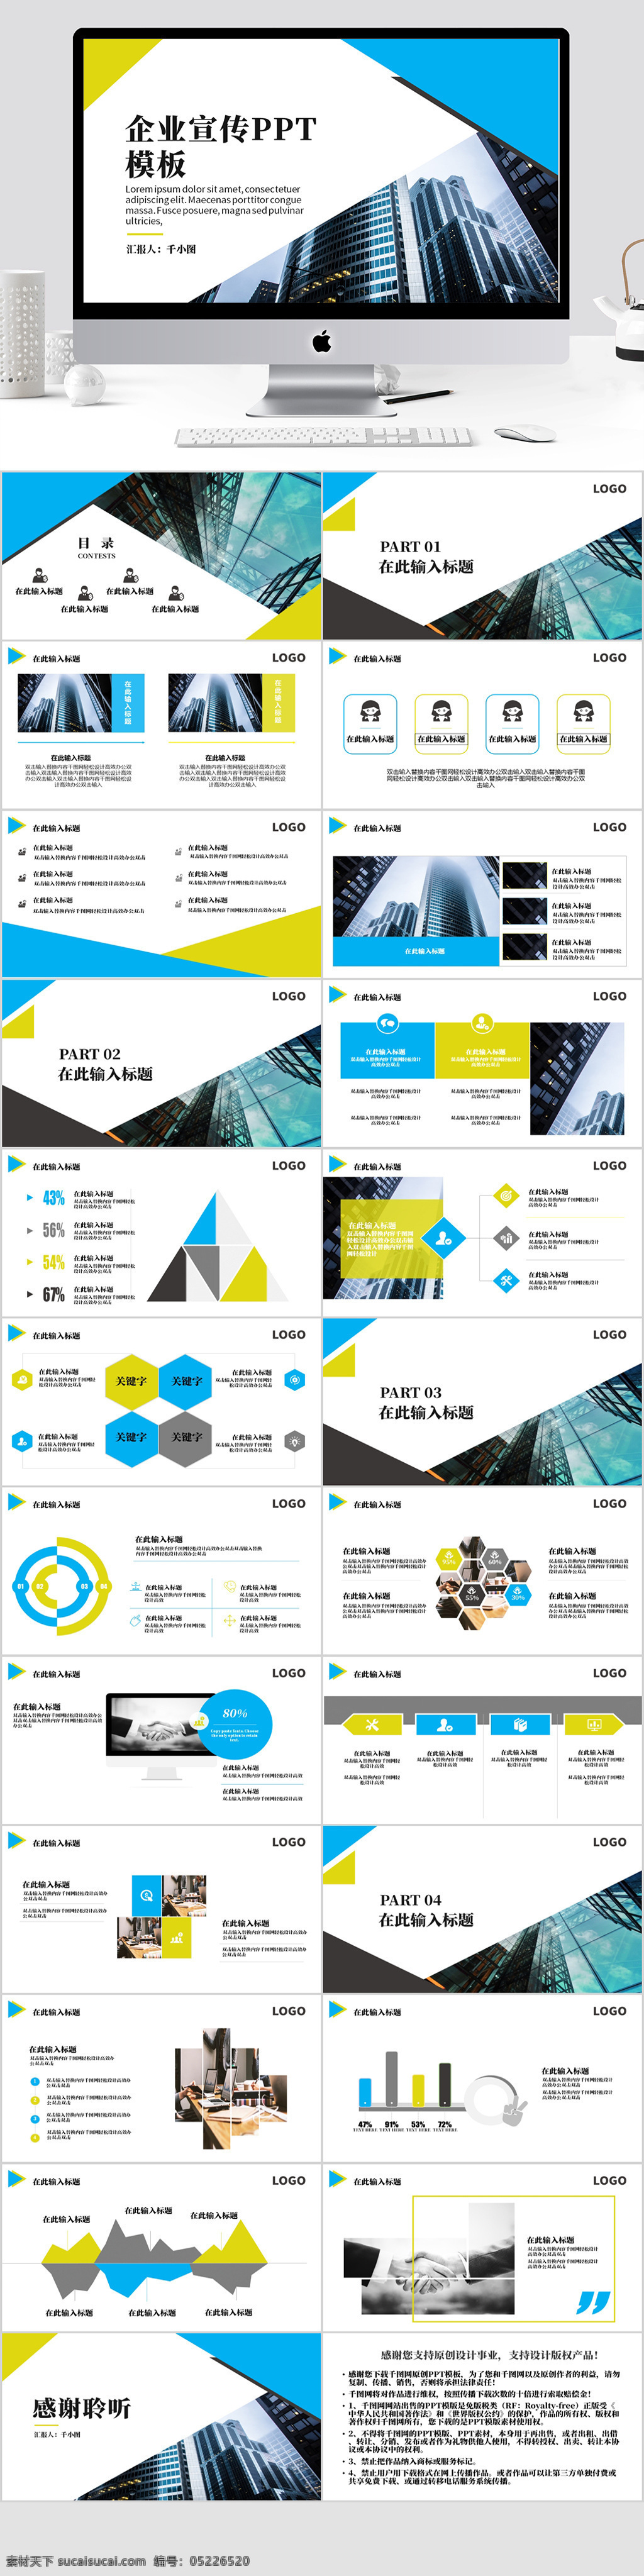 黄蓝 亮 色系 企业 宣传 模板 通用型 通用 黄蓝色 亮色系